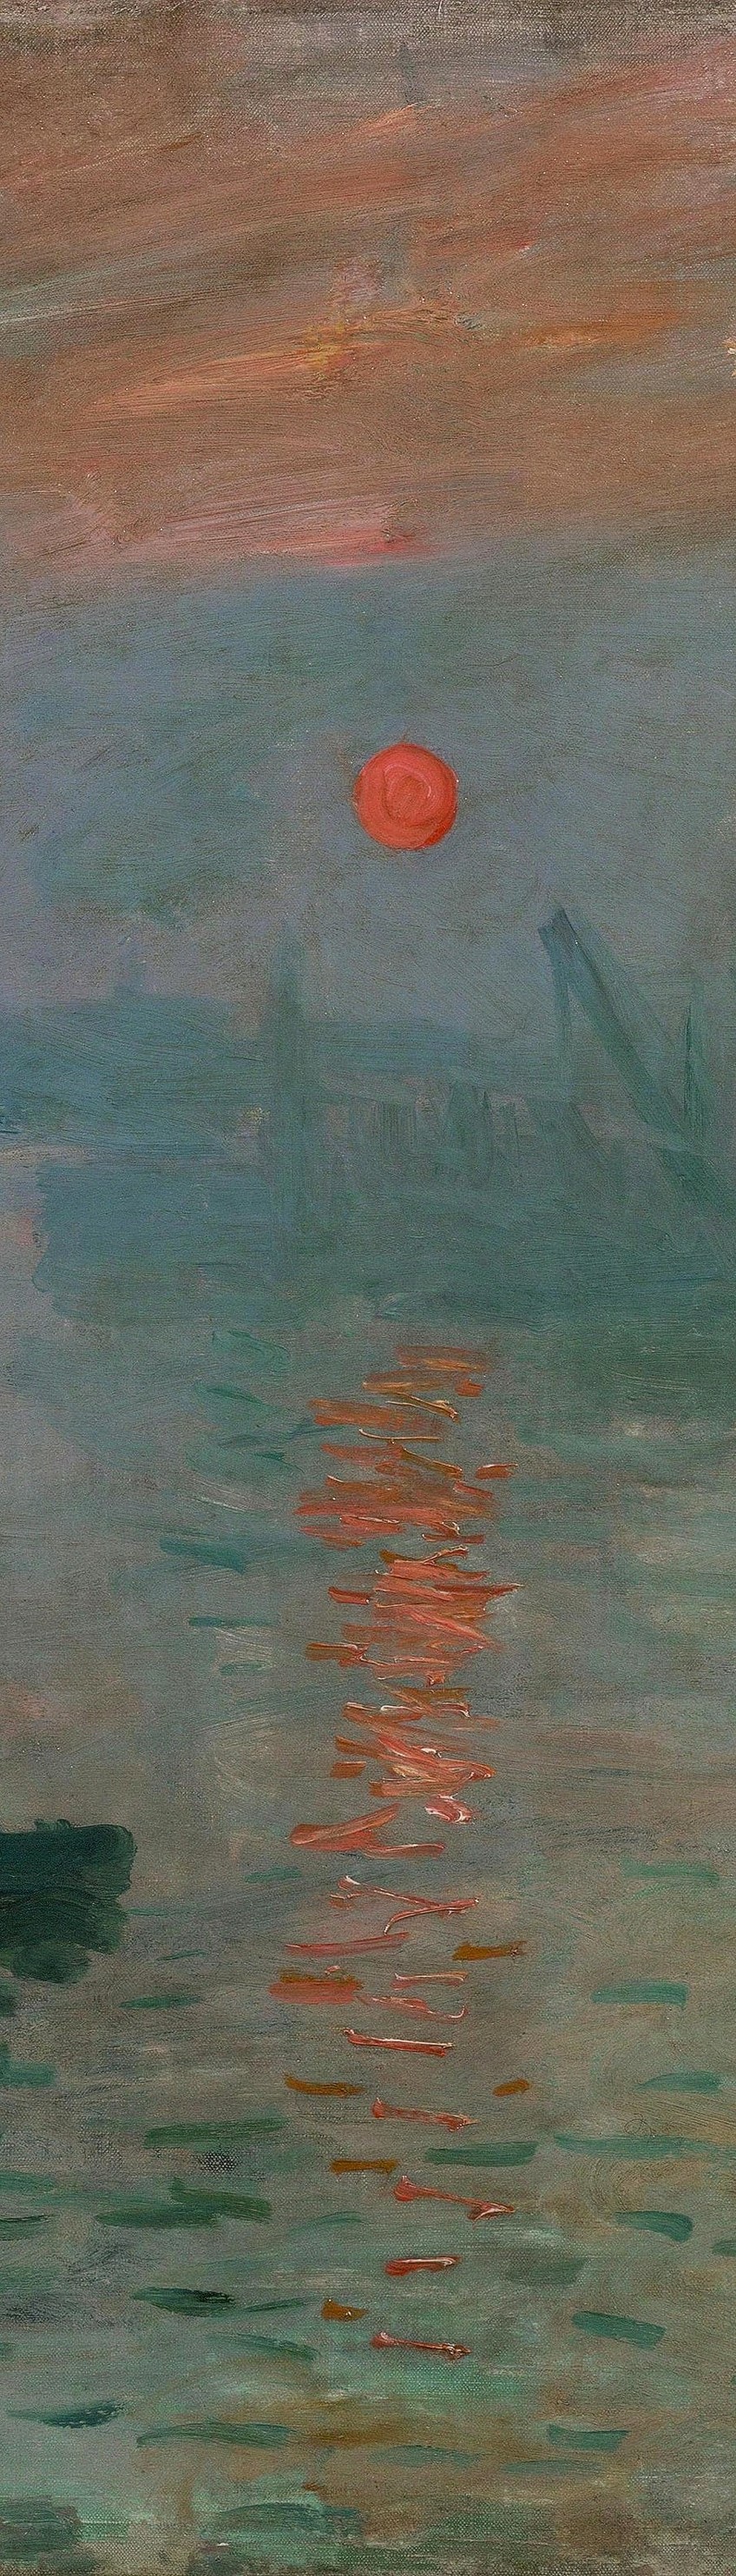 Monet Sunrise Painting Details